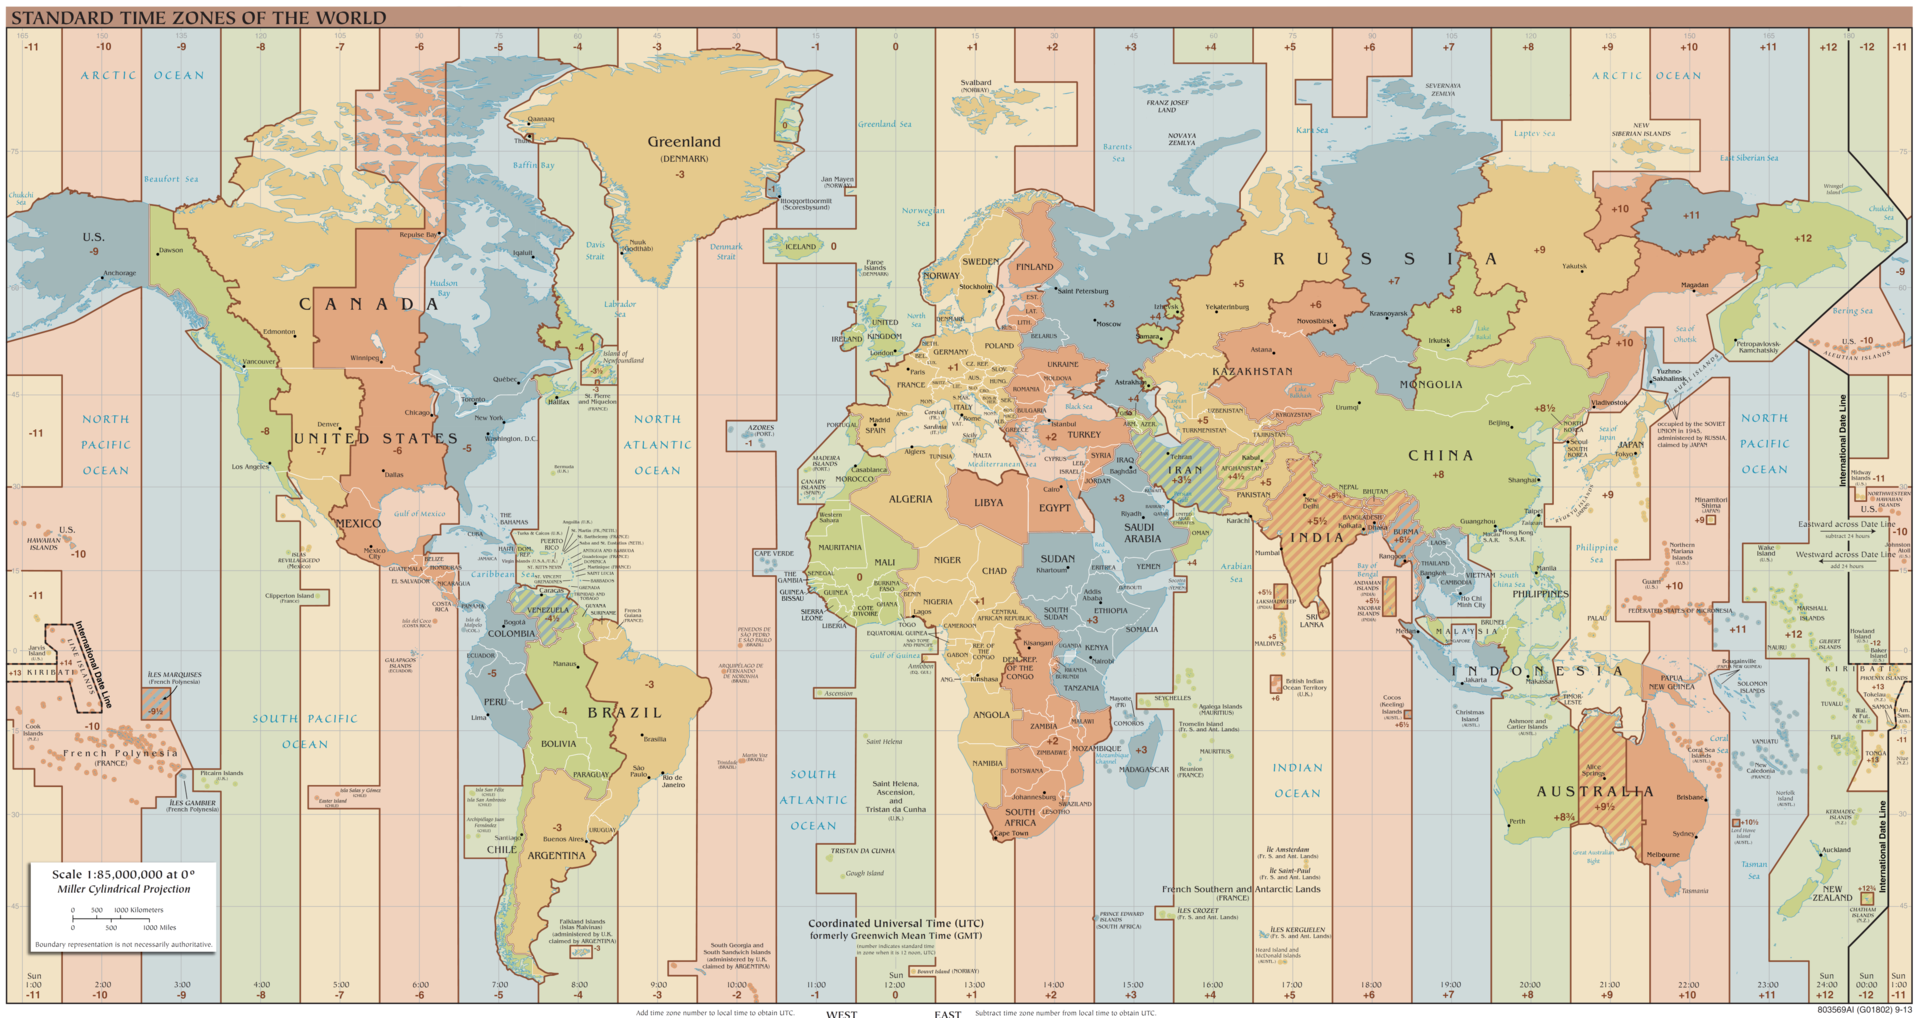 časová pásma mapa Časová pásma na zeměkouli   Kalendář365.cz   přehled časová pásma mapa